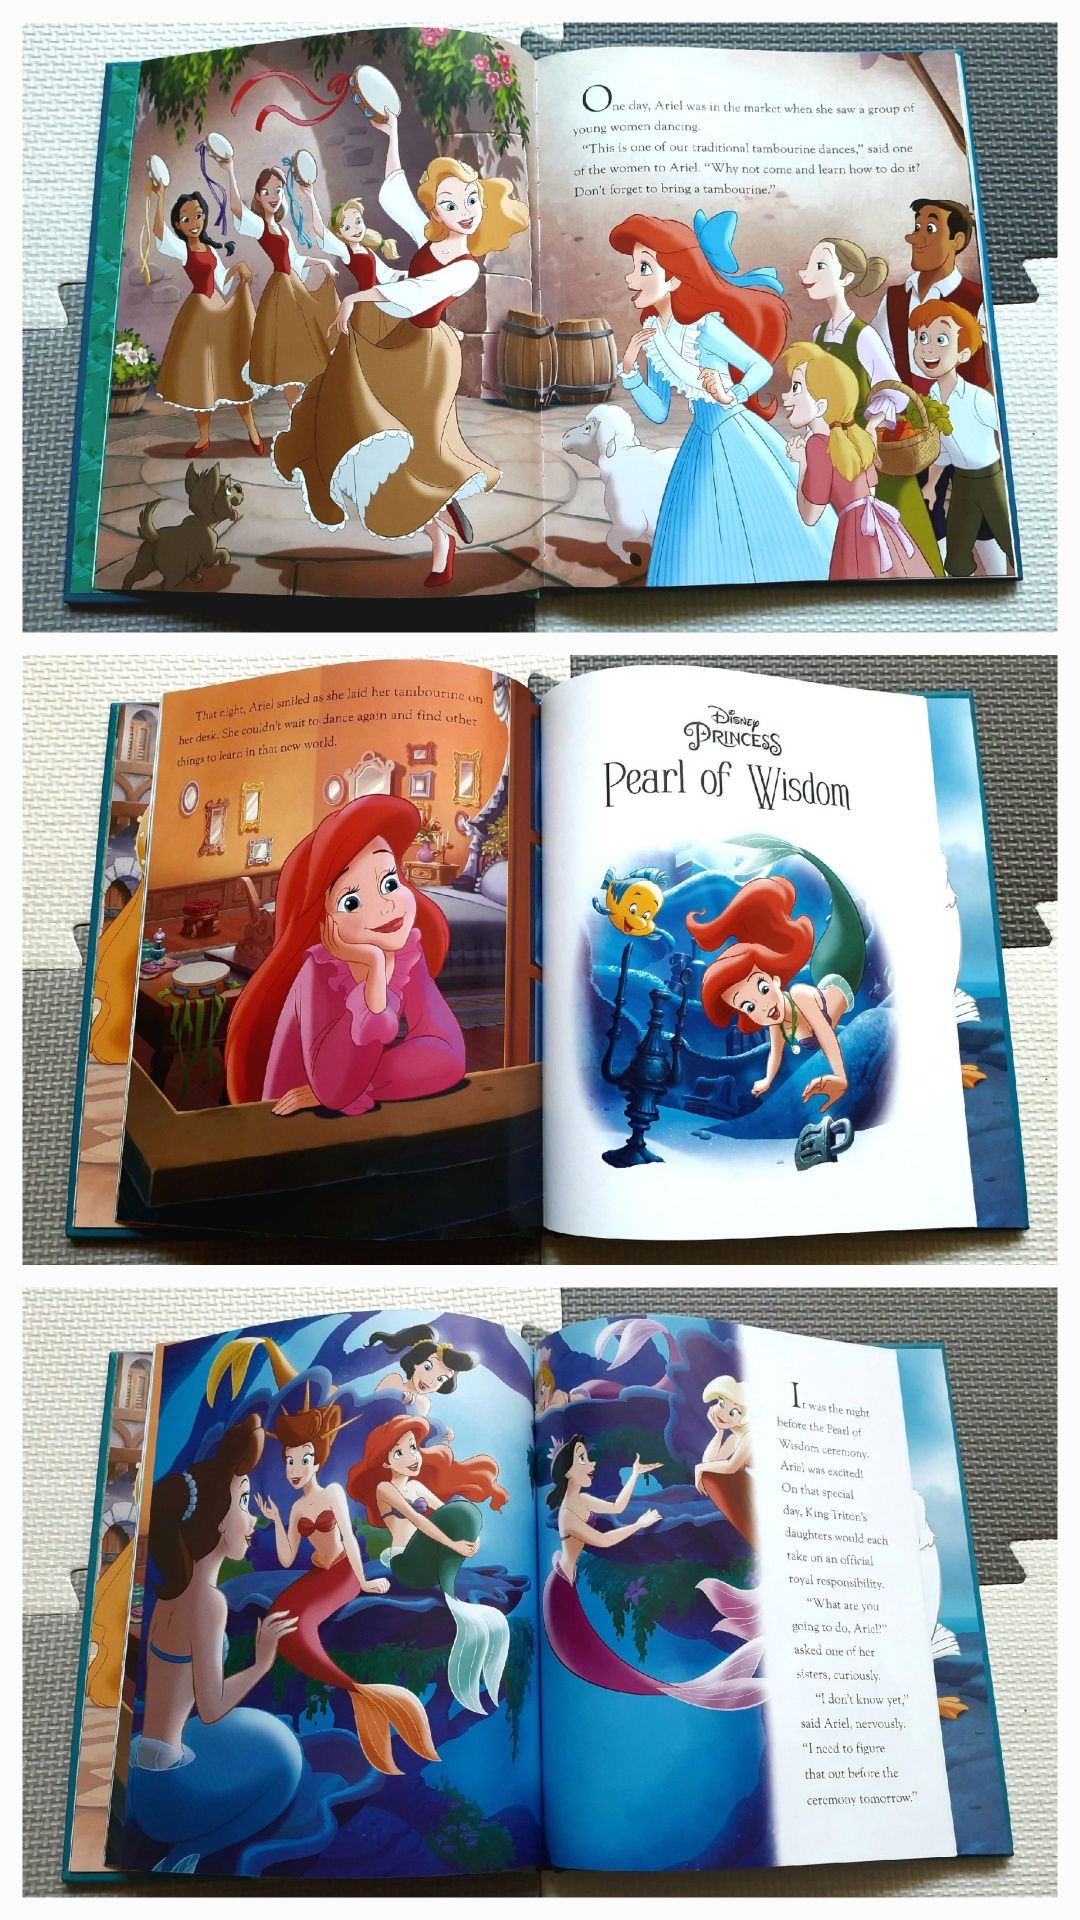 Disney Princess The Little Mermaid Jewel Collection z naszyjnikiem